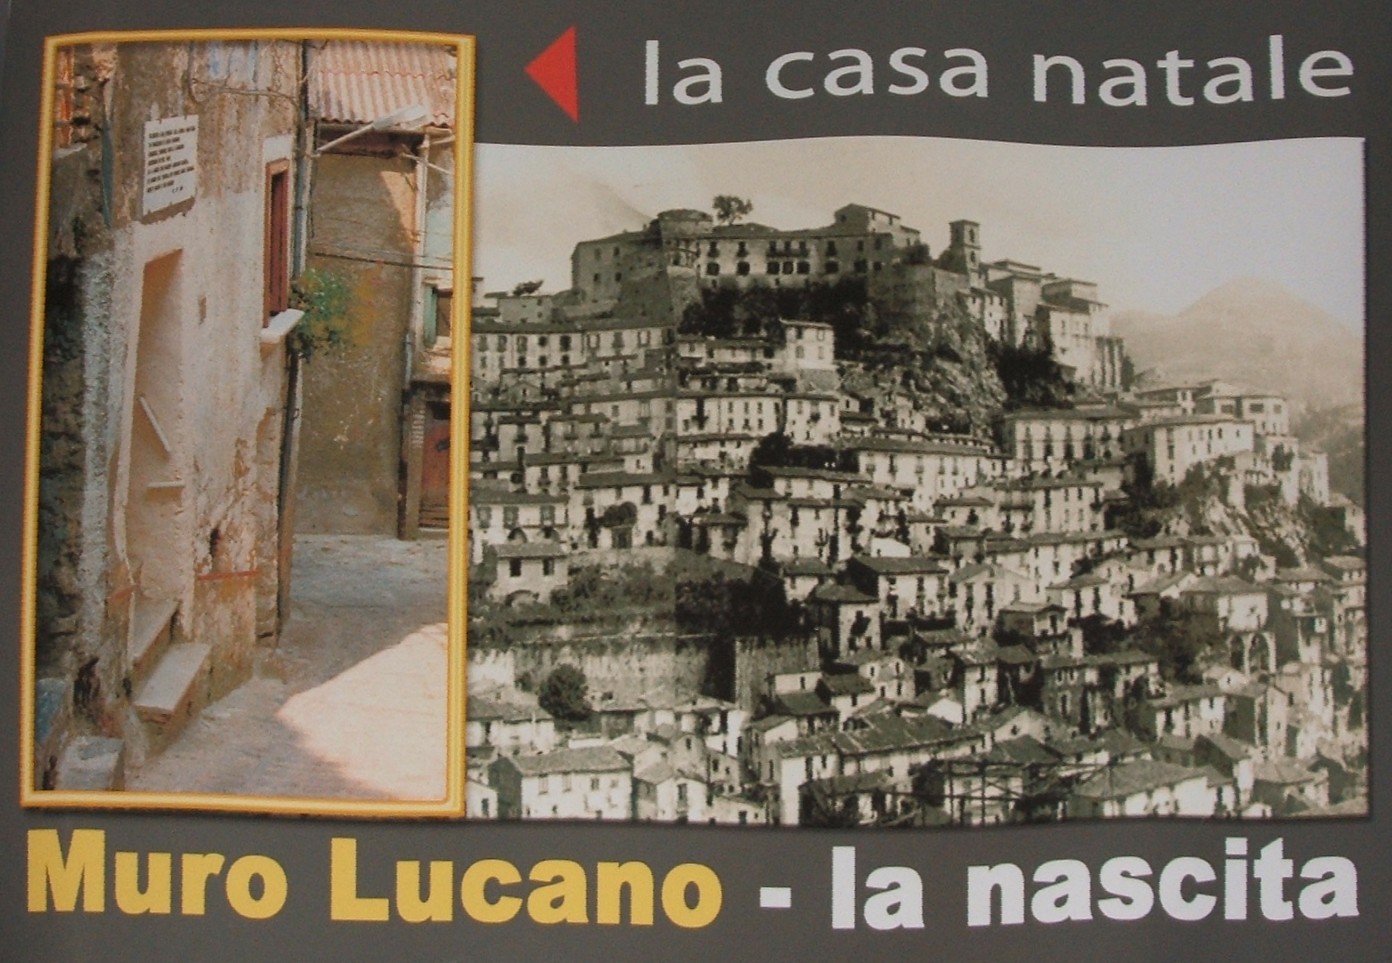 Gerhards Geburtsort und -haus in Muro Lucano, Fotos im  Santuario in Materdomini